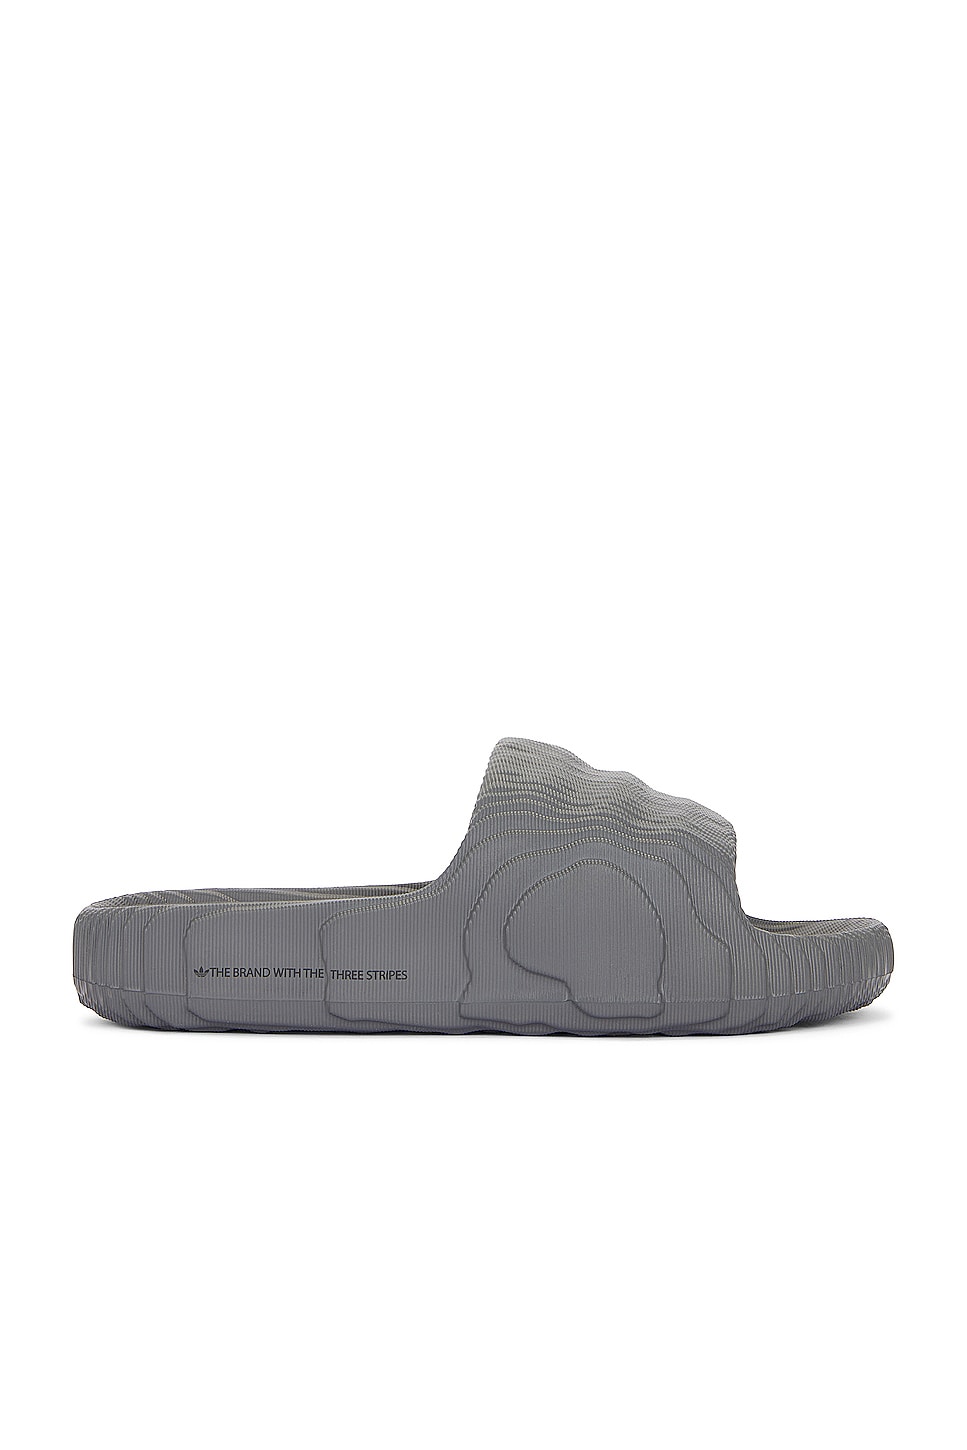 Image 1 of adidas Originals Adilette 22 in Grey Five